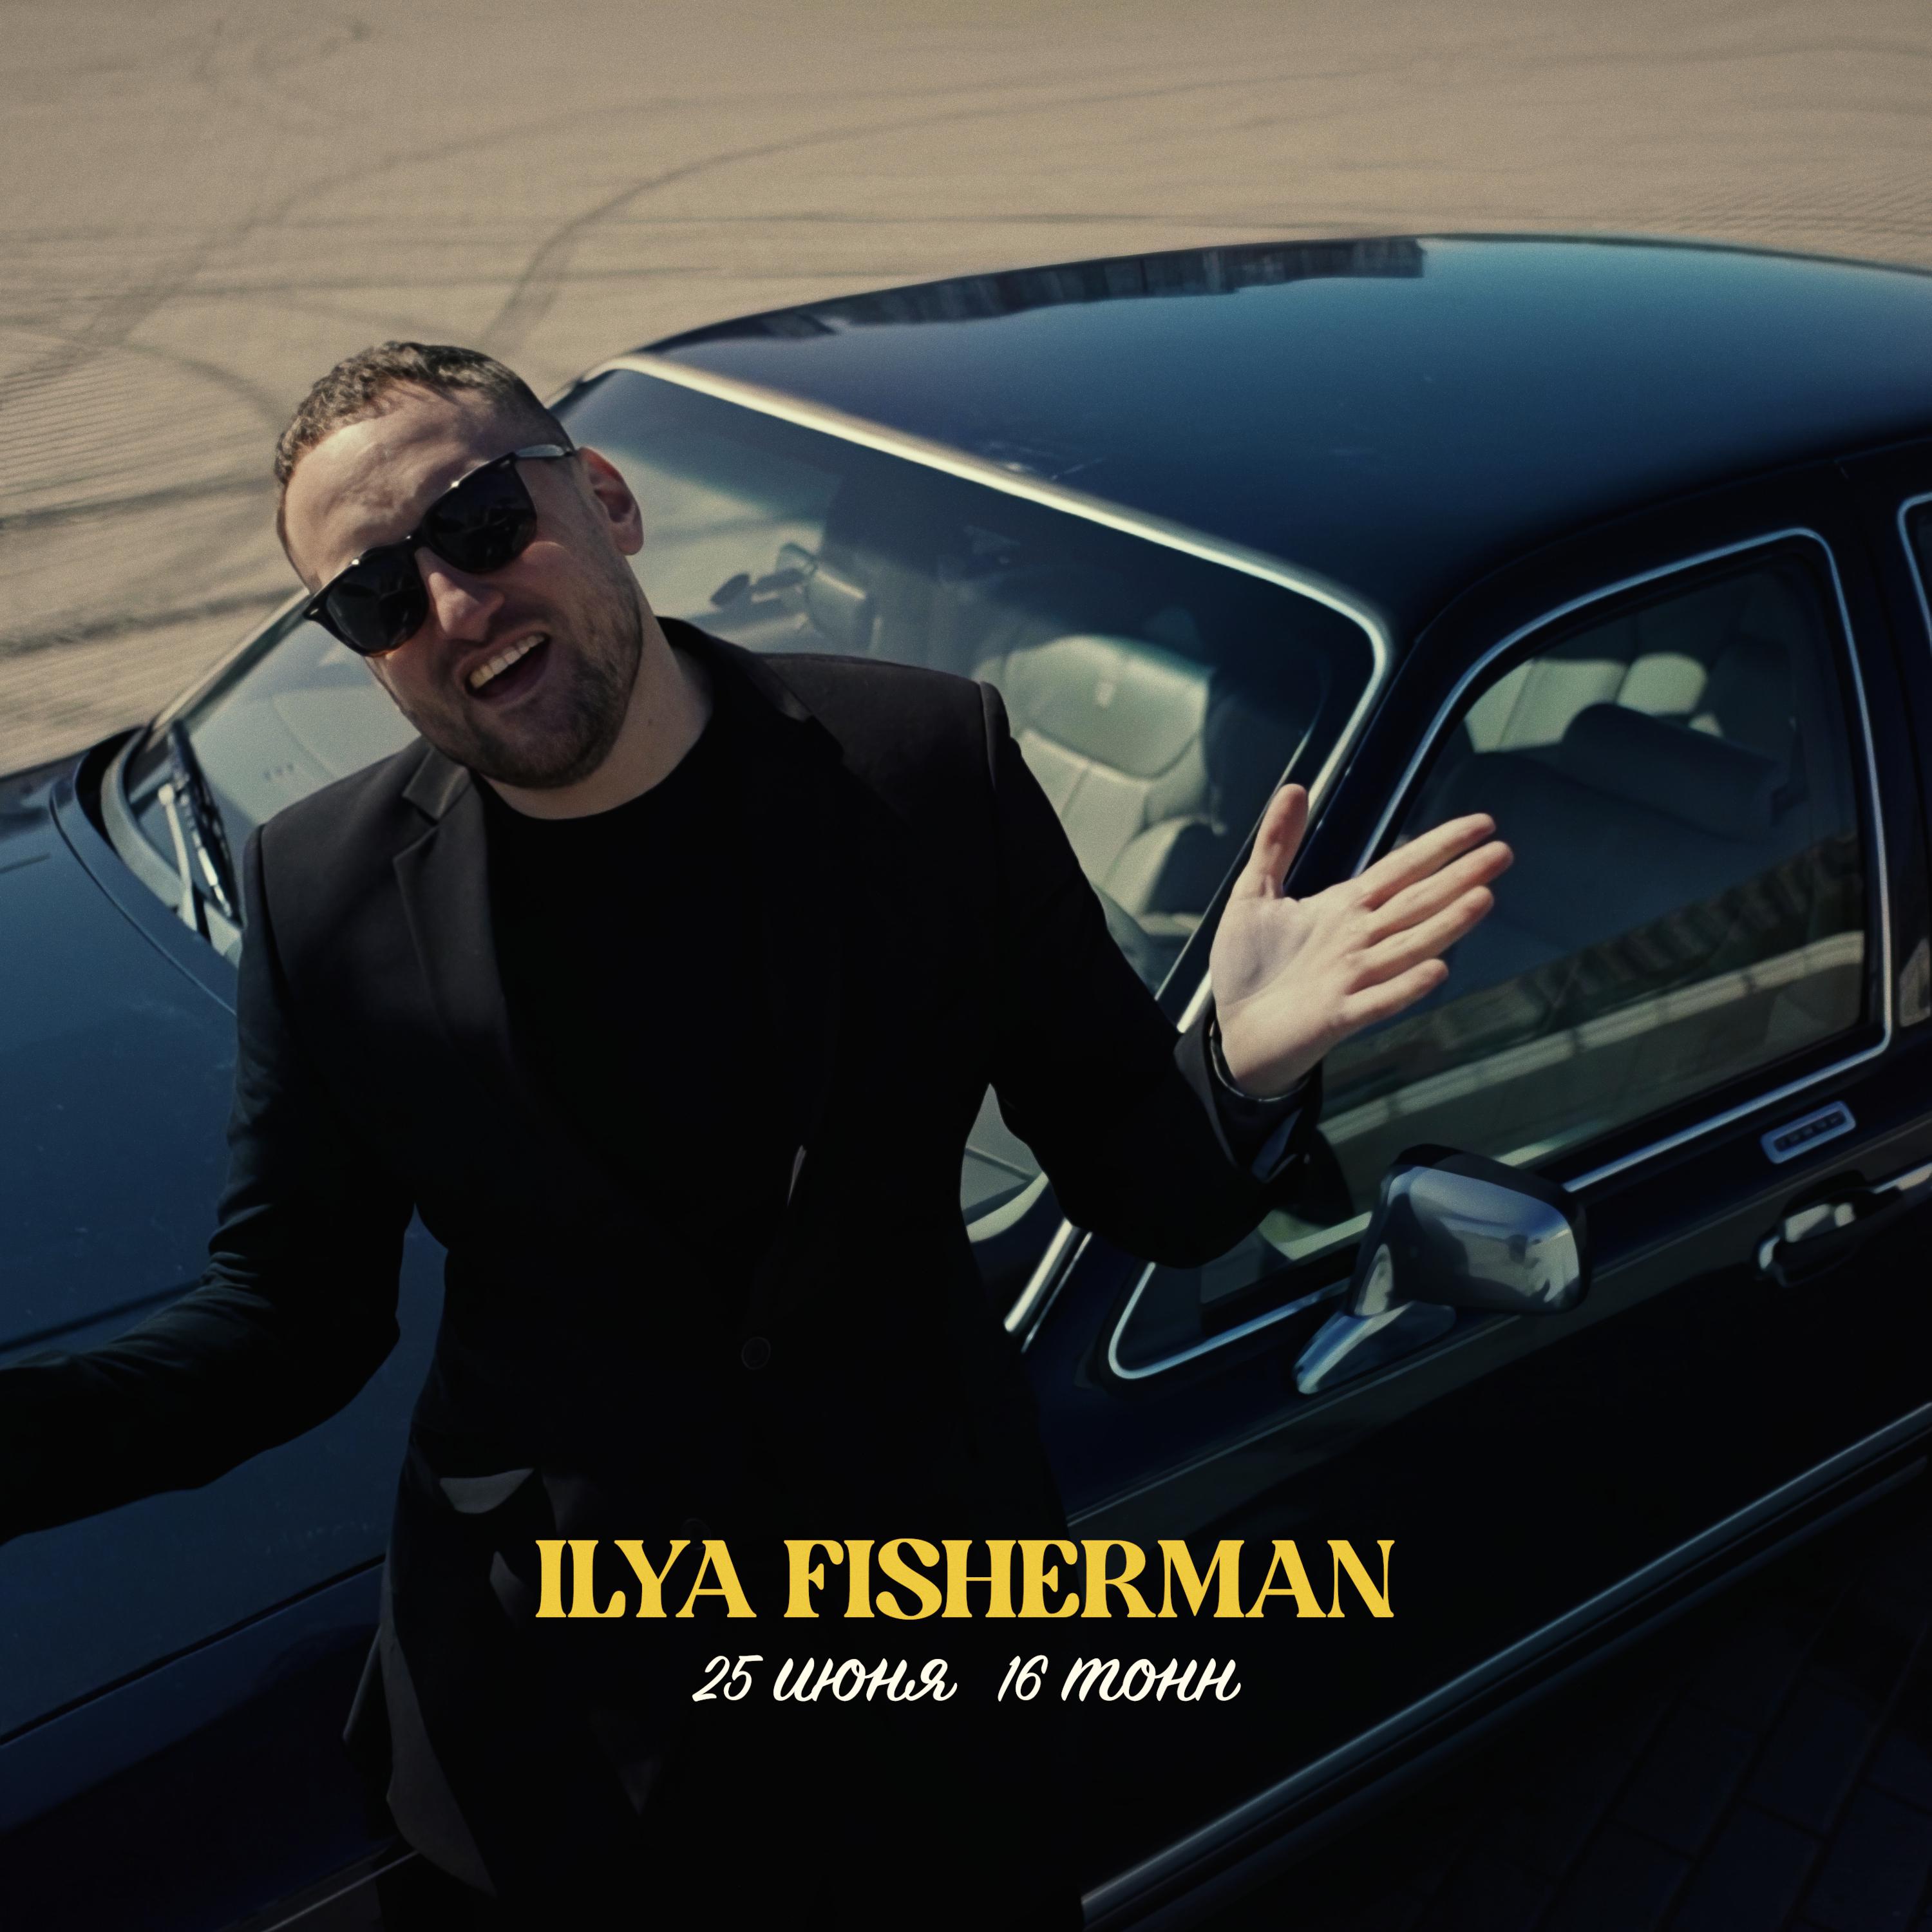 Ilya Fisherman - фото